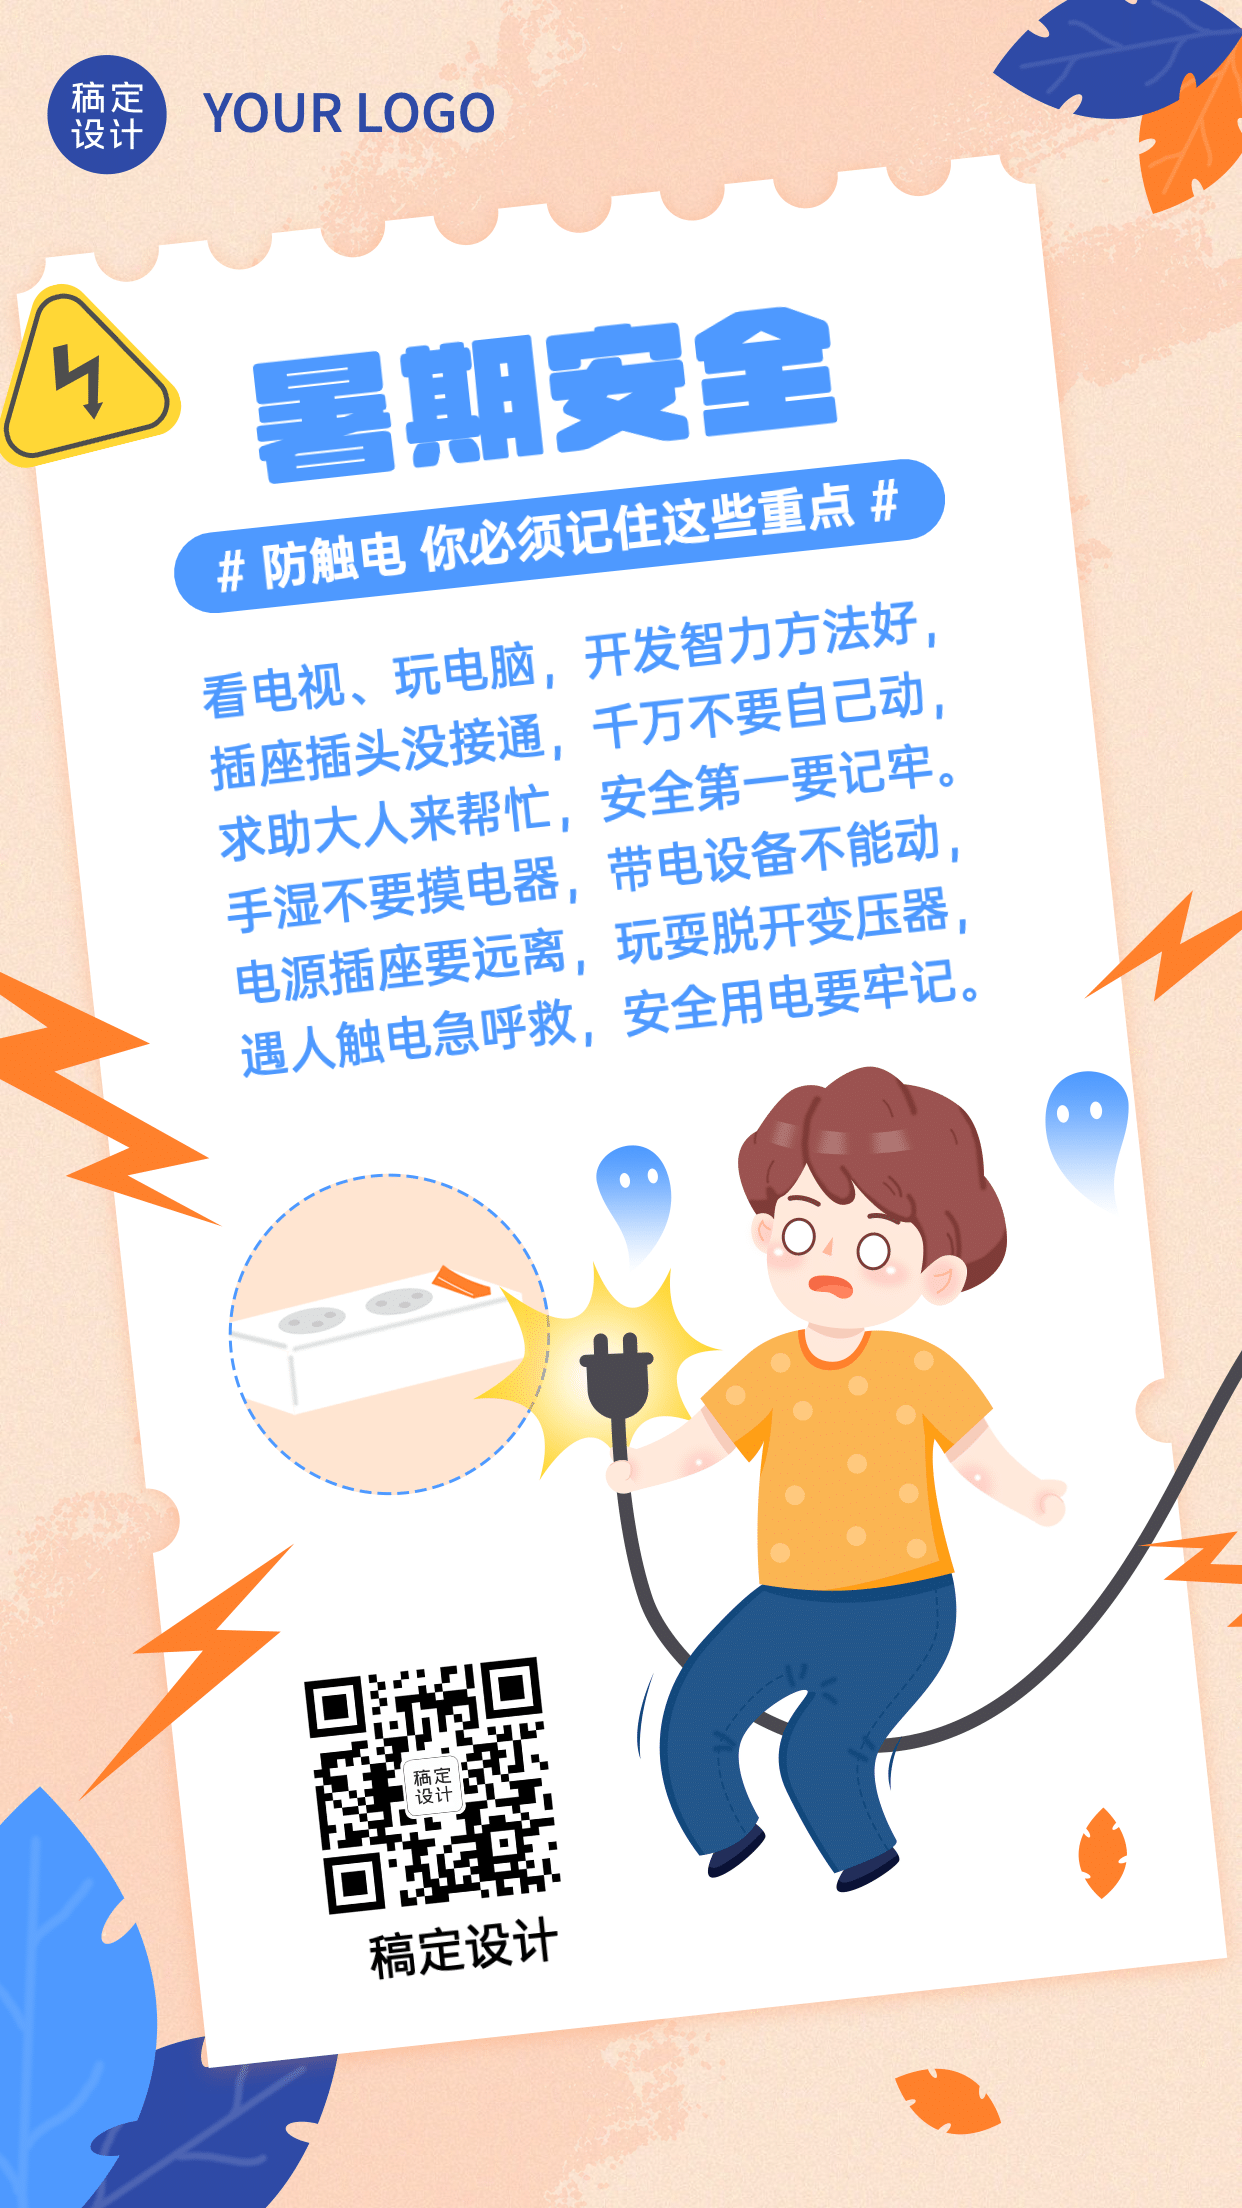 暑期儿童安全用电知识科普宣传海报